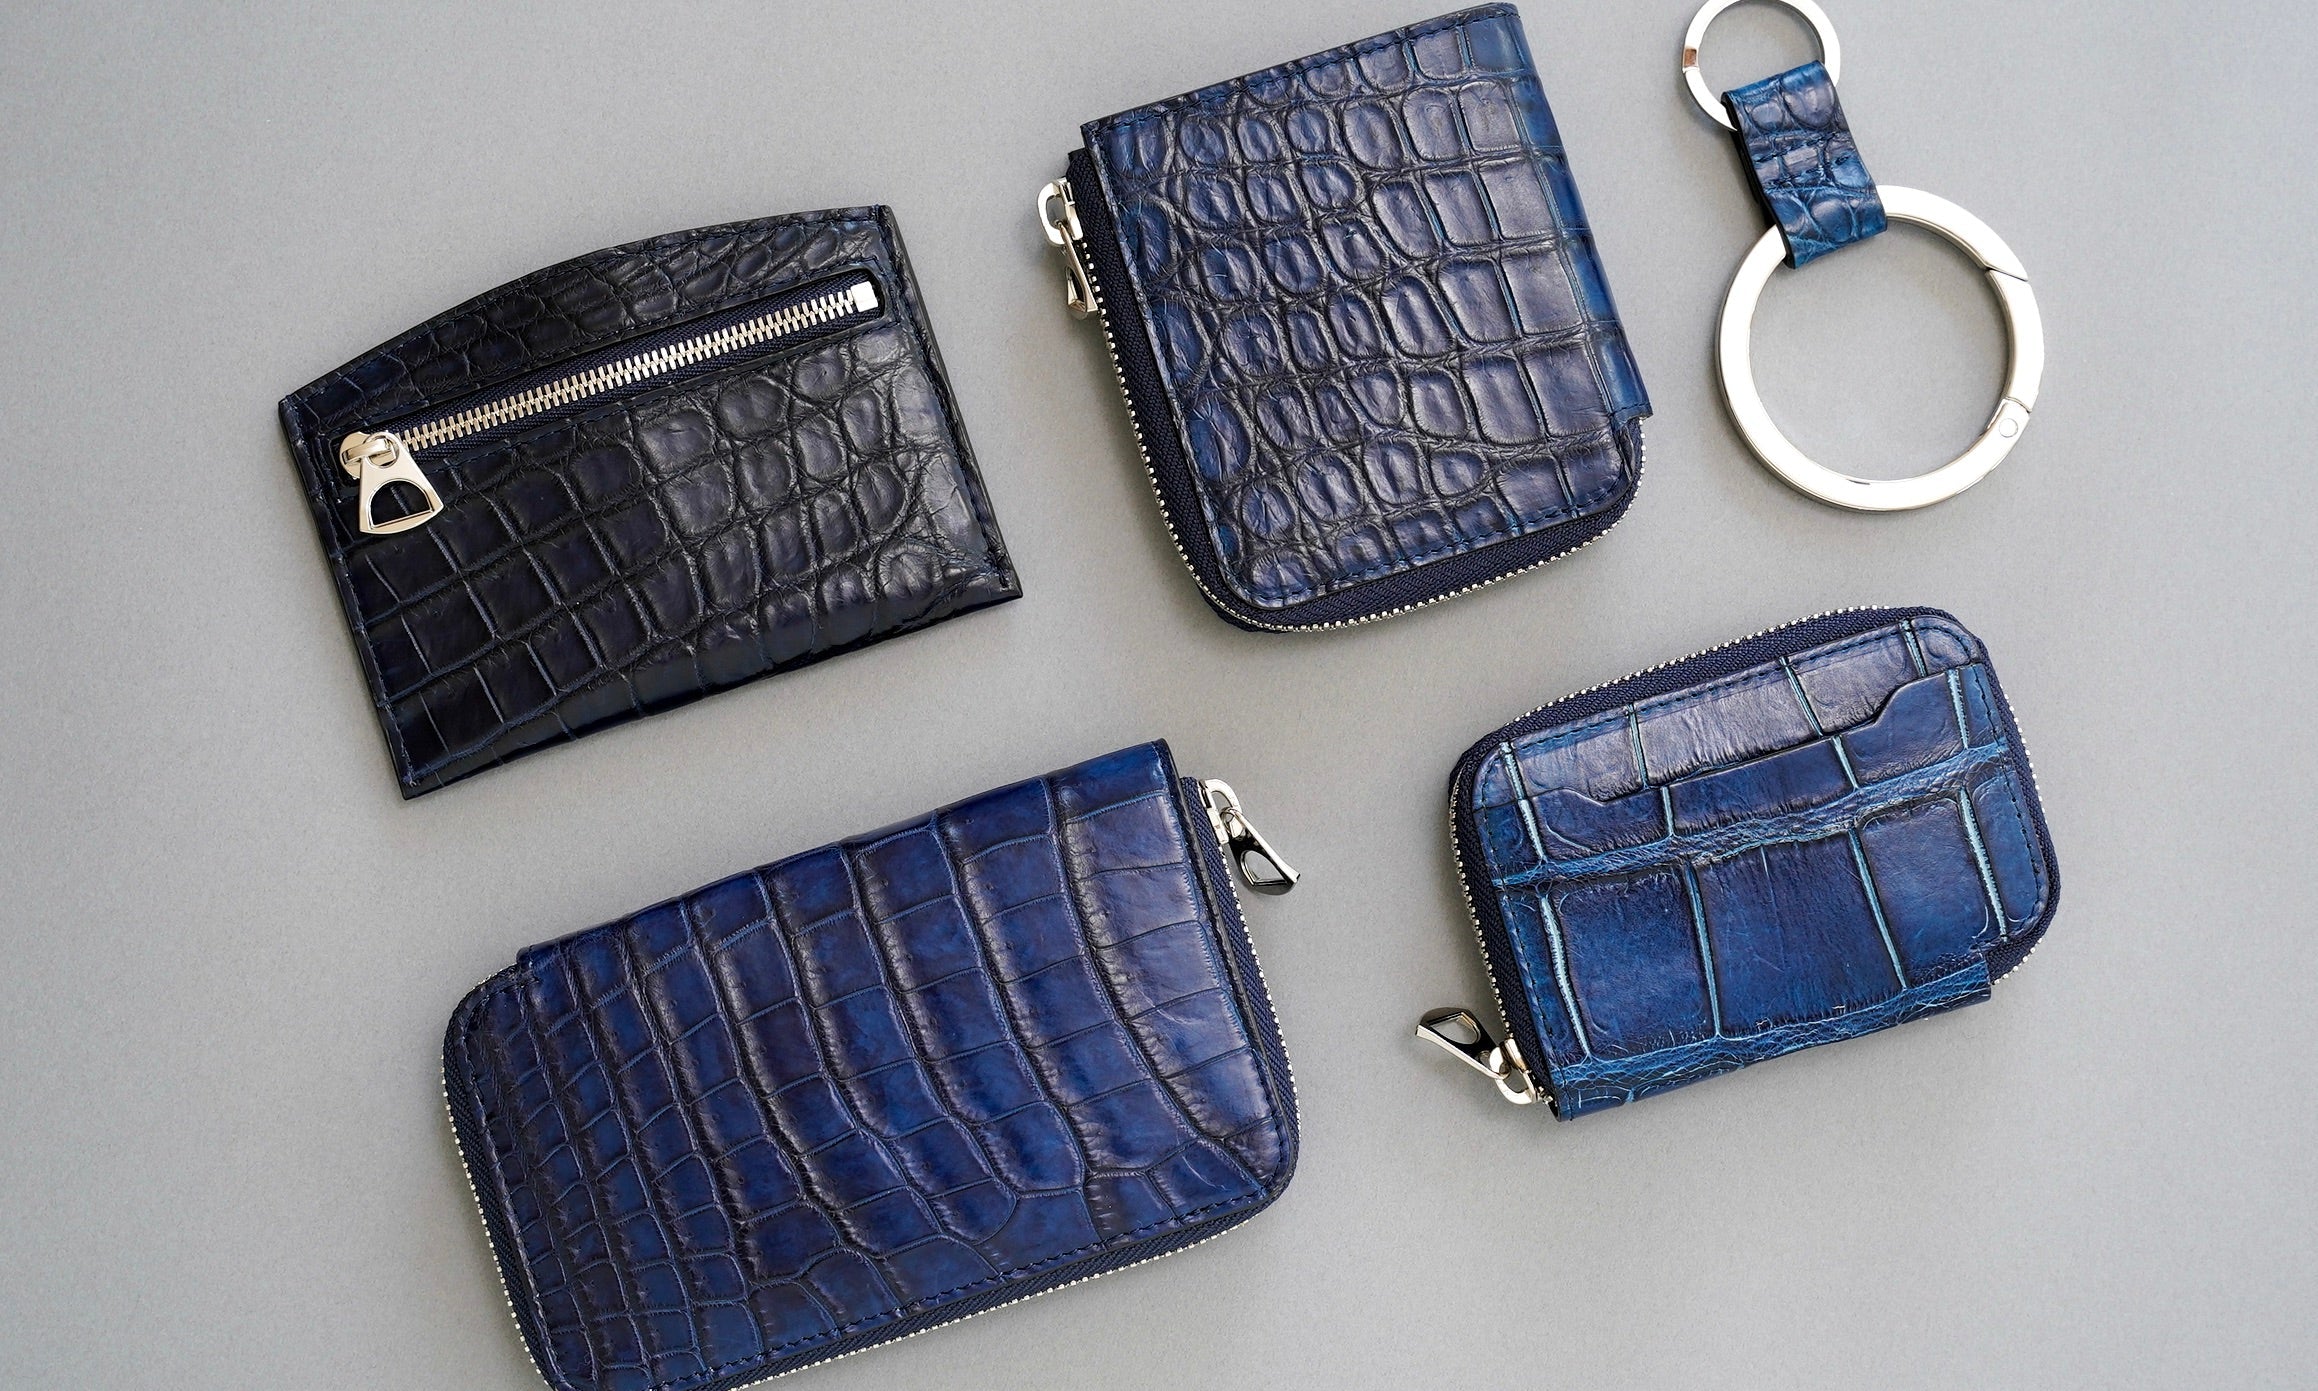 NAVY (ネイビー・紺色・藍色) - ITTI (イッチ) | レザーブランド 革小物 財布・サイフ・さいふ バッグ・カバン・鞄・かばん グッズ メンズ レディース